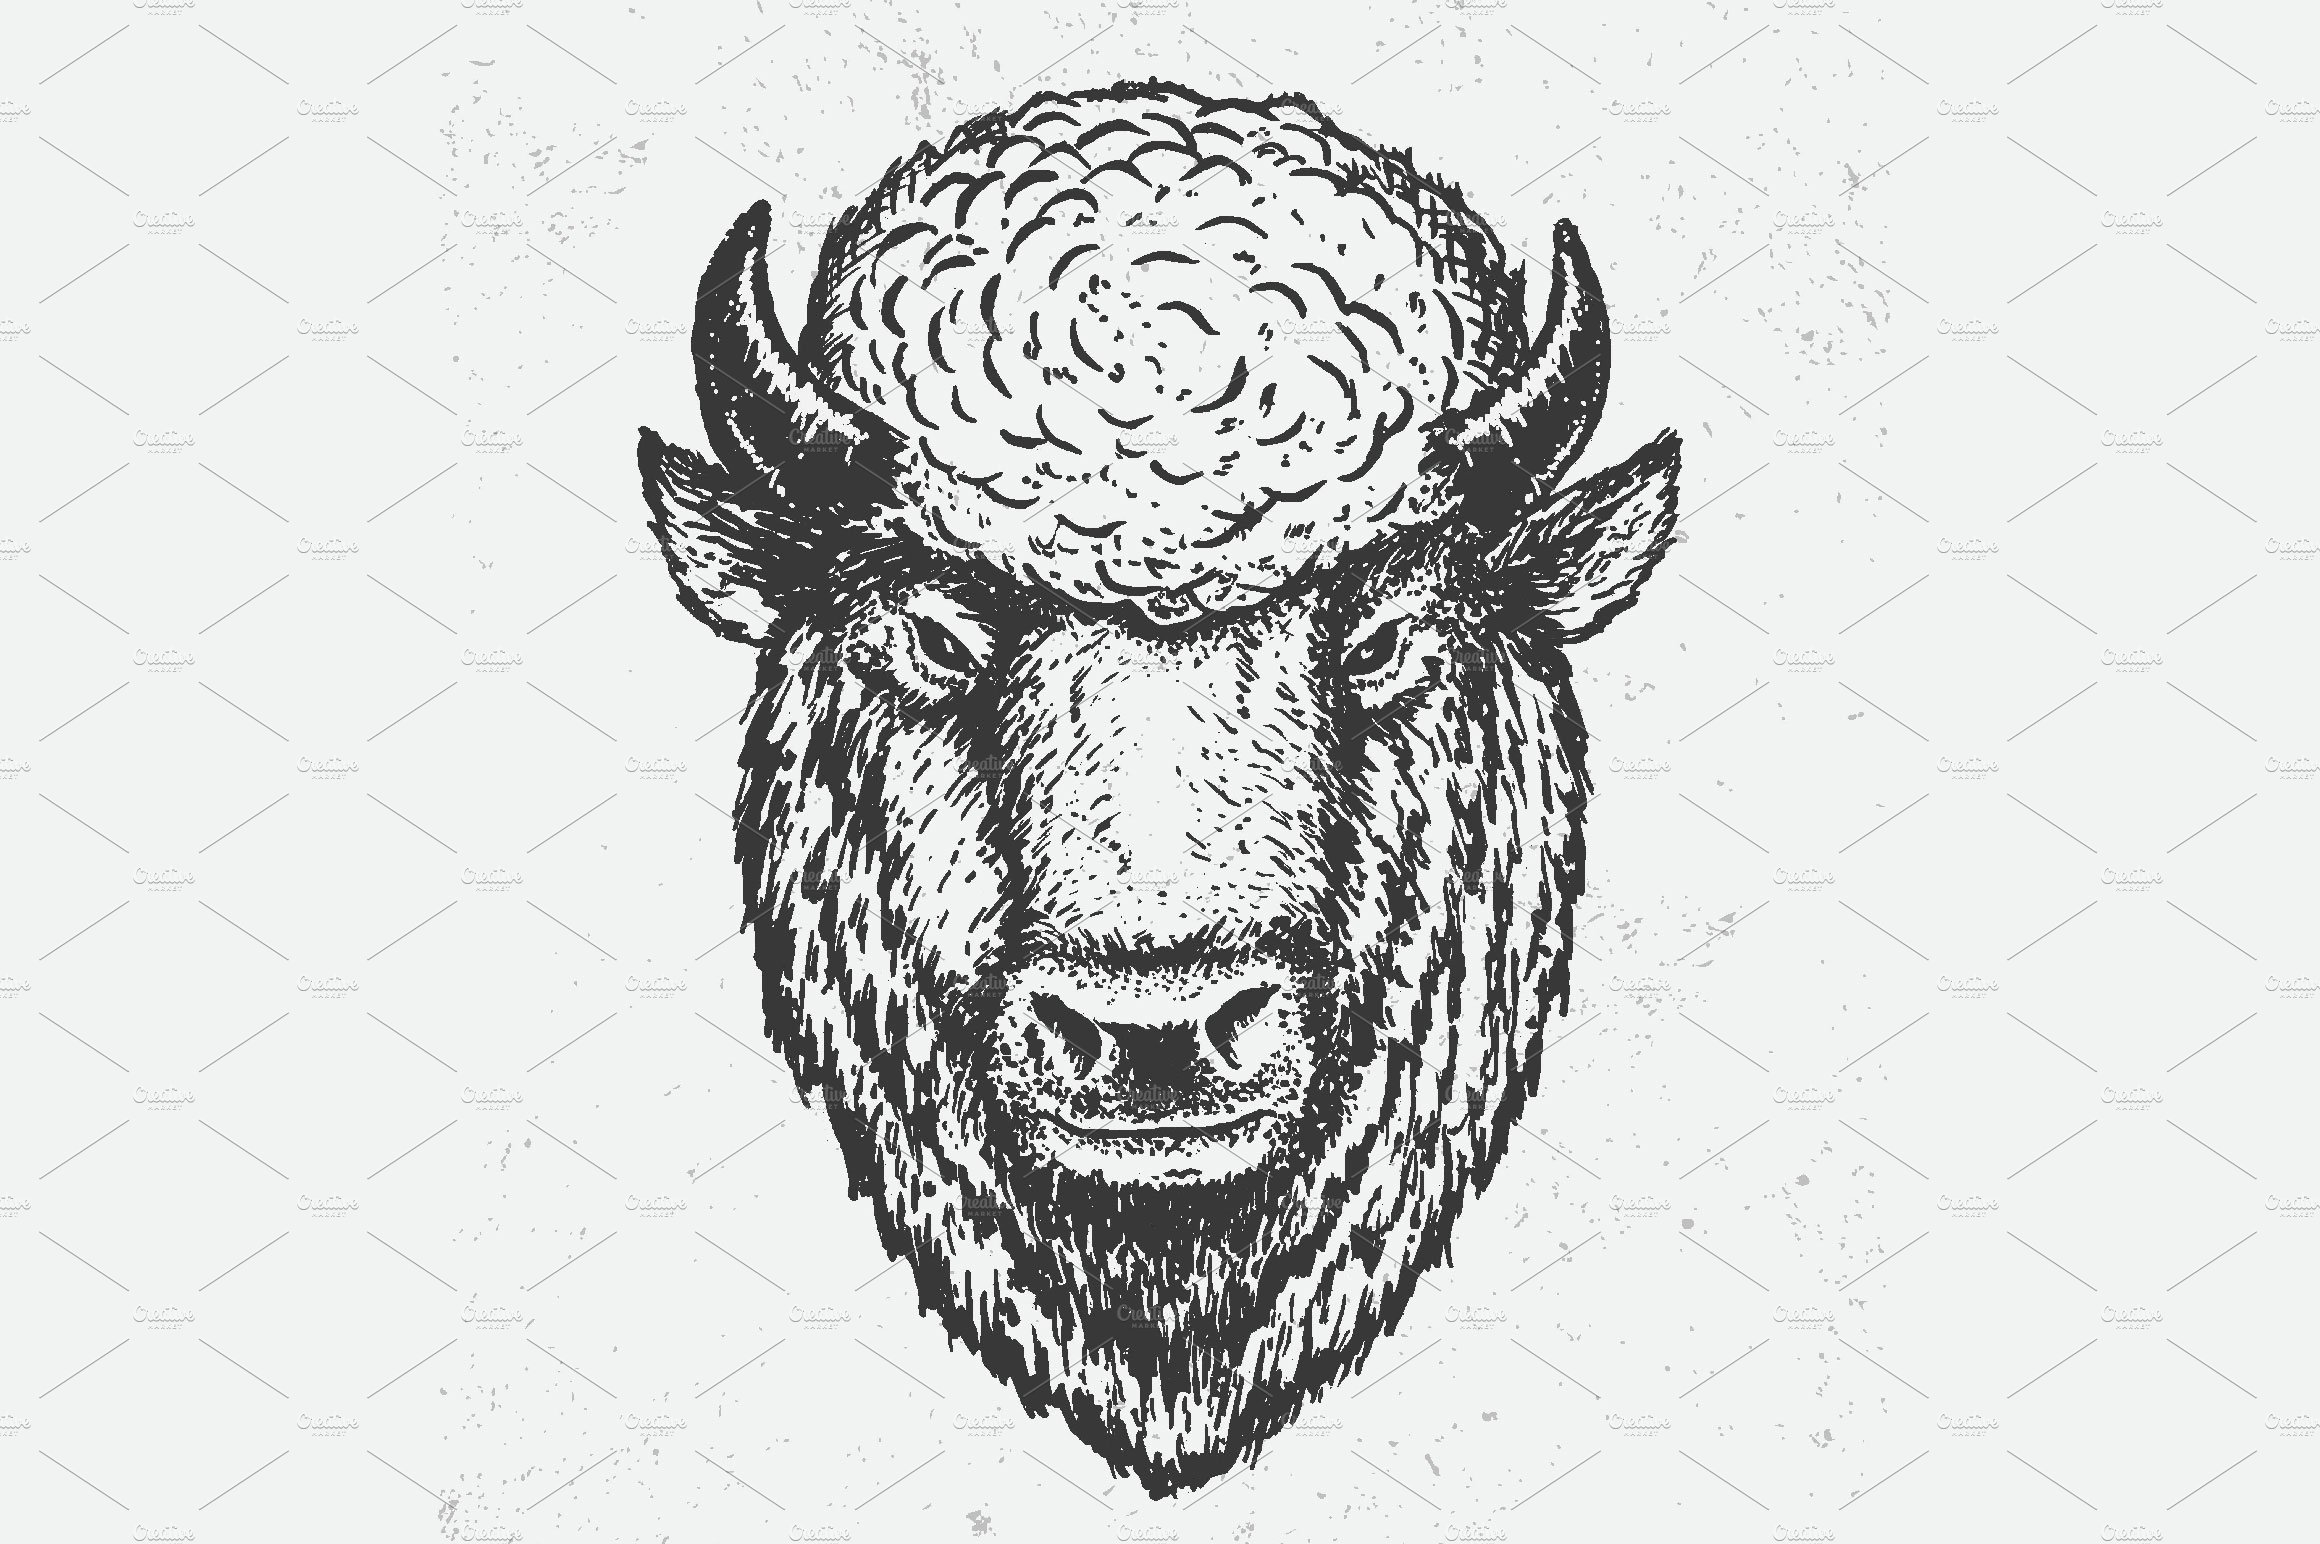 the buffalo head cover image.